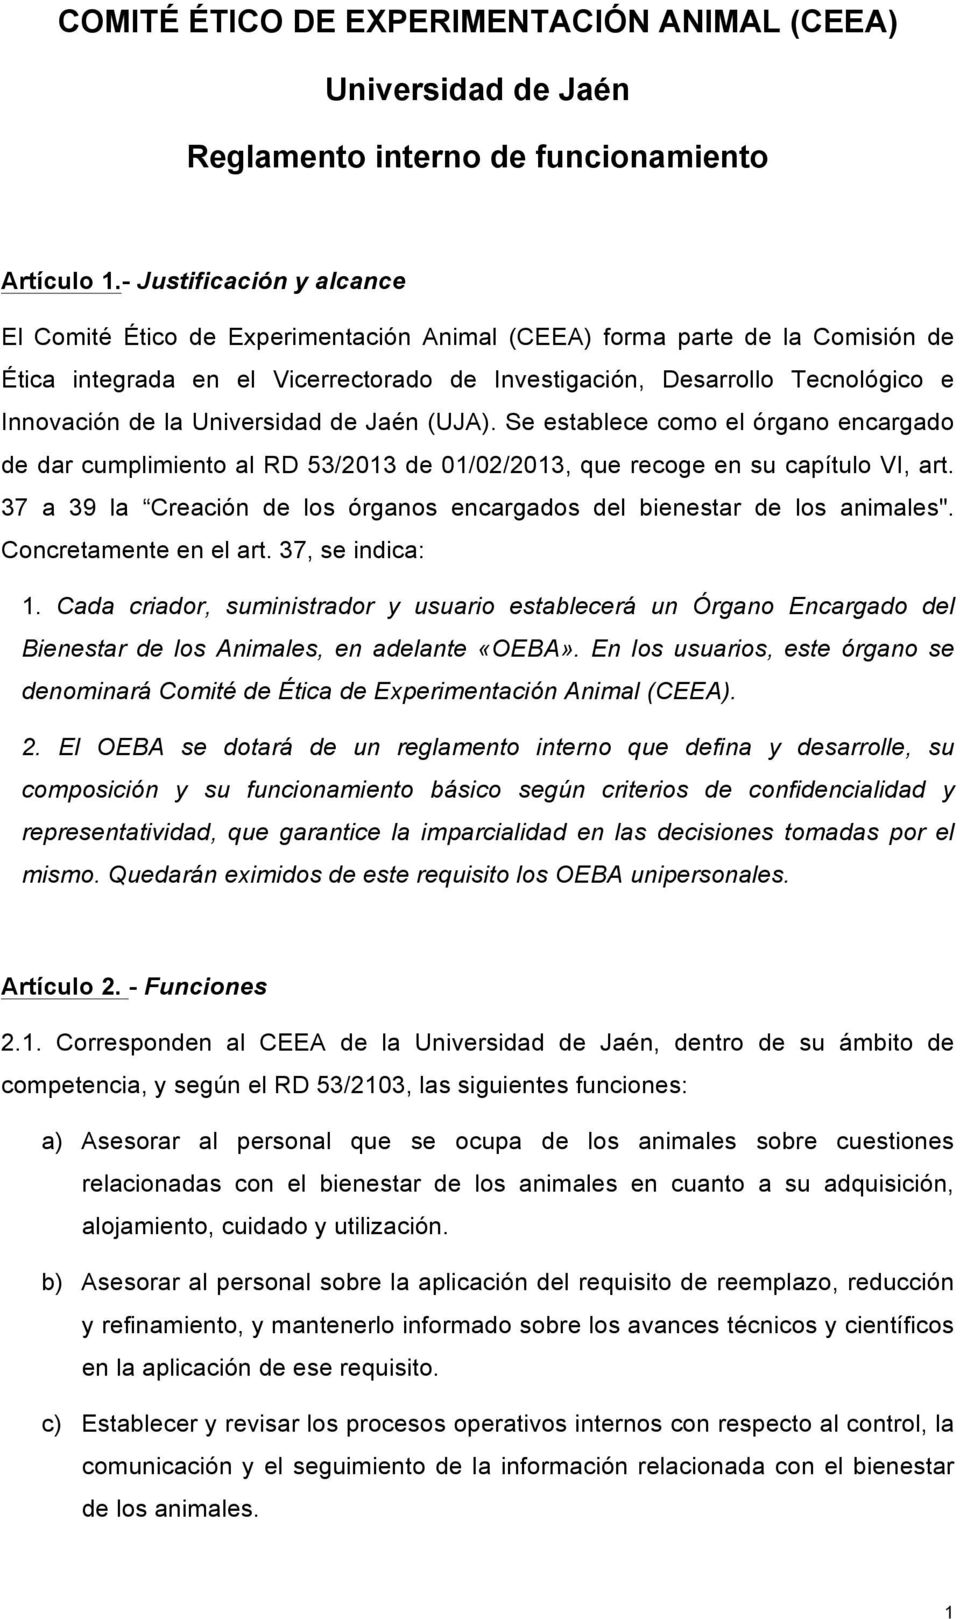 la Universidad de Jaén (UJA). Se establece como el órgano encargado de dar cumplimiento al RD 53/2013 de 01/02/2013, que recoge en su capítulo VI, art.